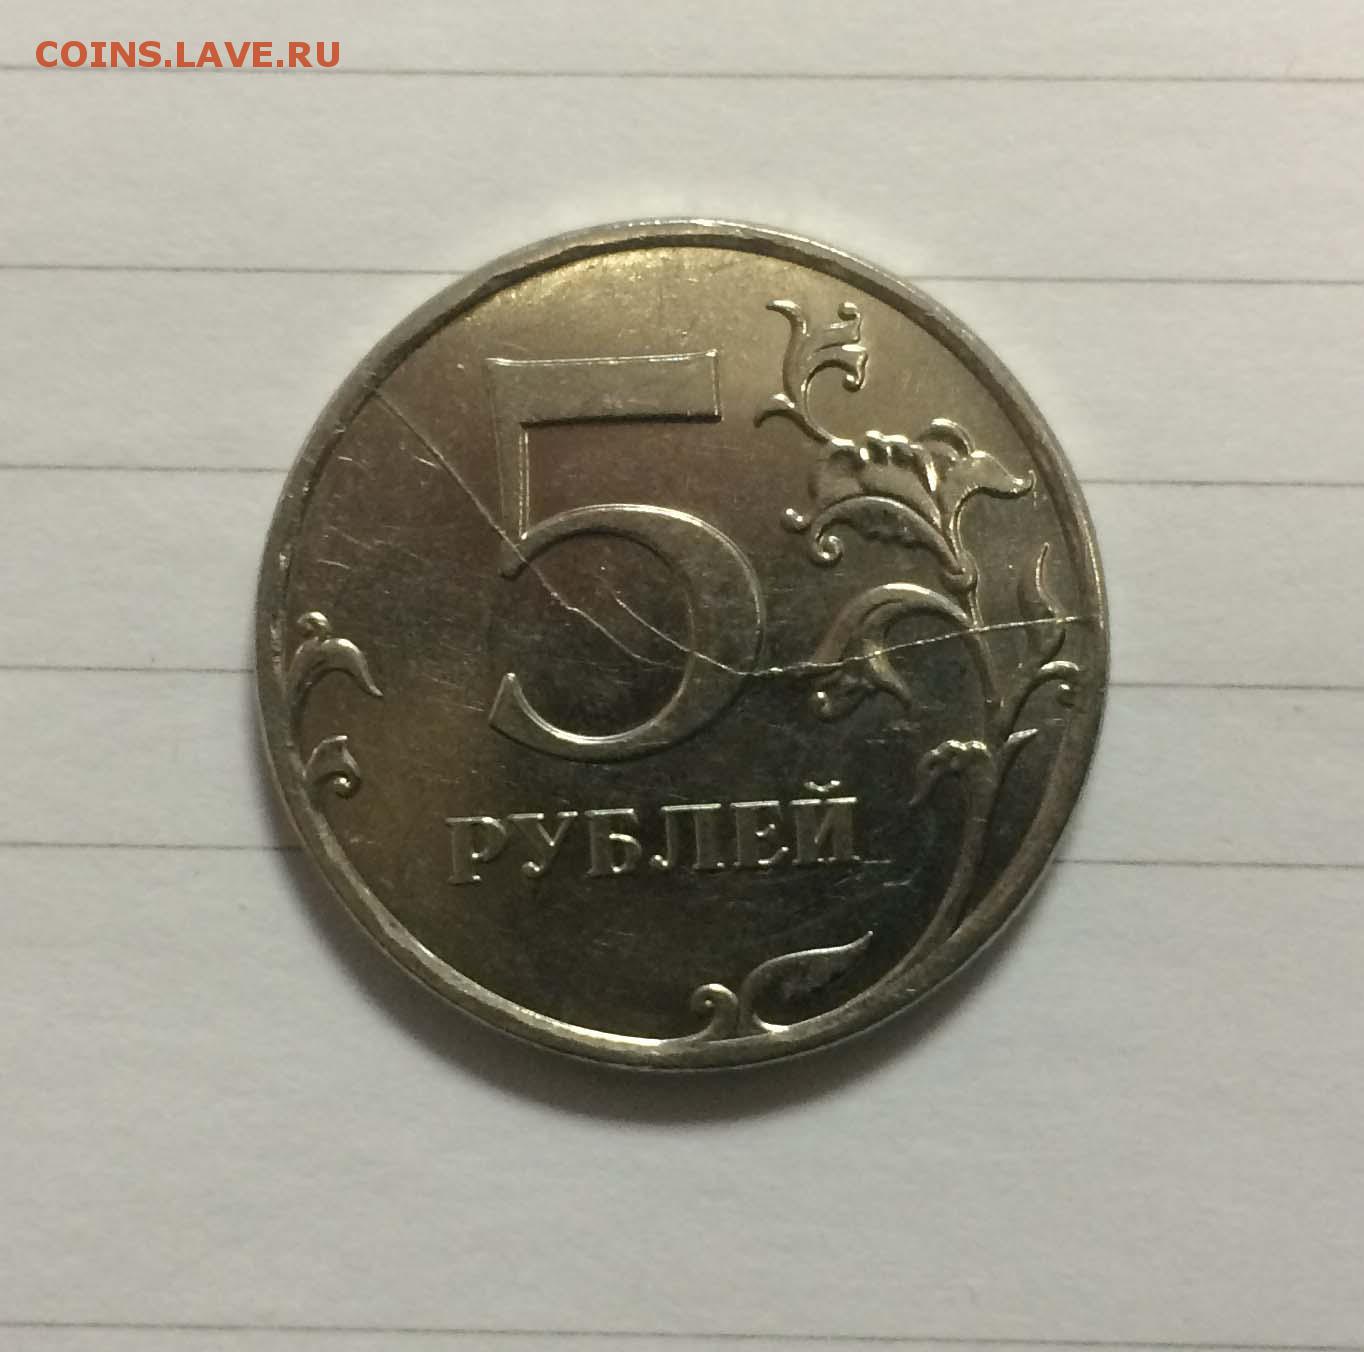 5 рублей мешок. 5 Рублей 2008 года ММД. 5 Рублей 2014 ММД. Монета 5 рублей 1998. 5 Рублей 1997.